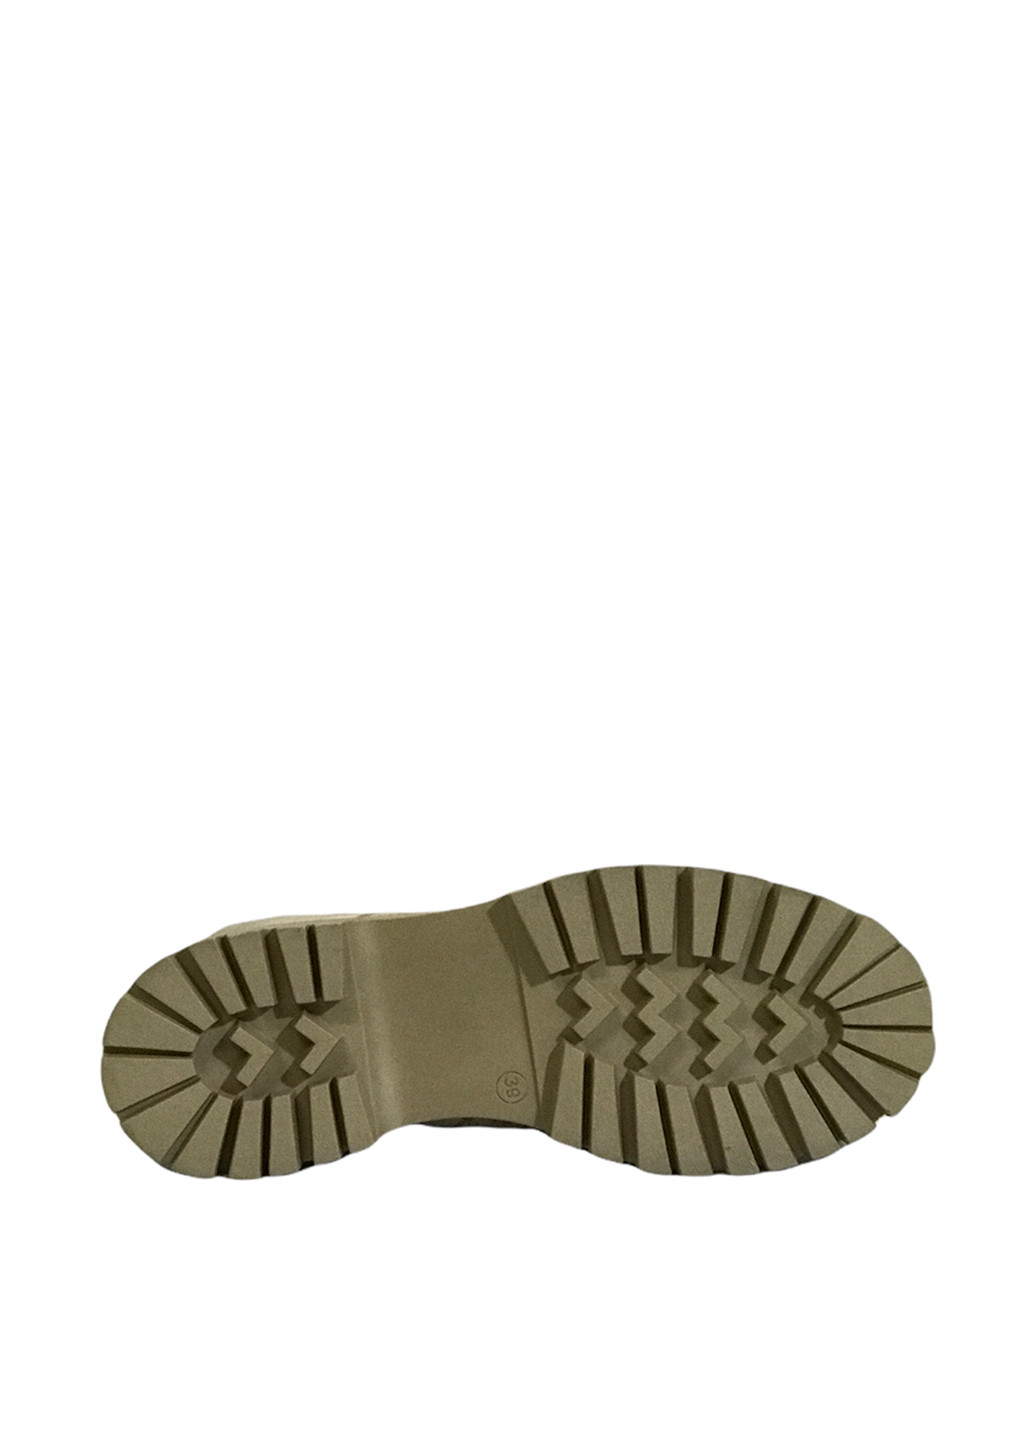 Осенние ботинки берцы Derem с перфорацией, со шнуровкой из натуральной замши